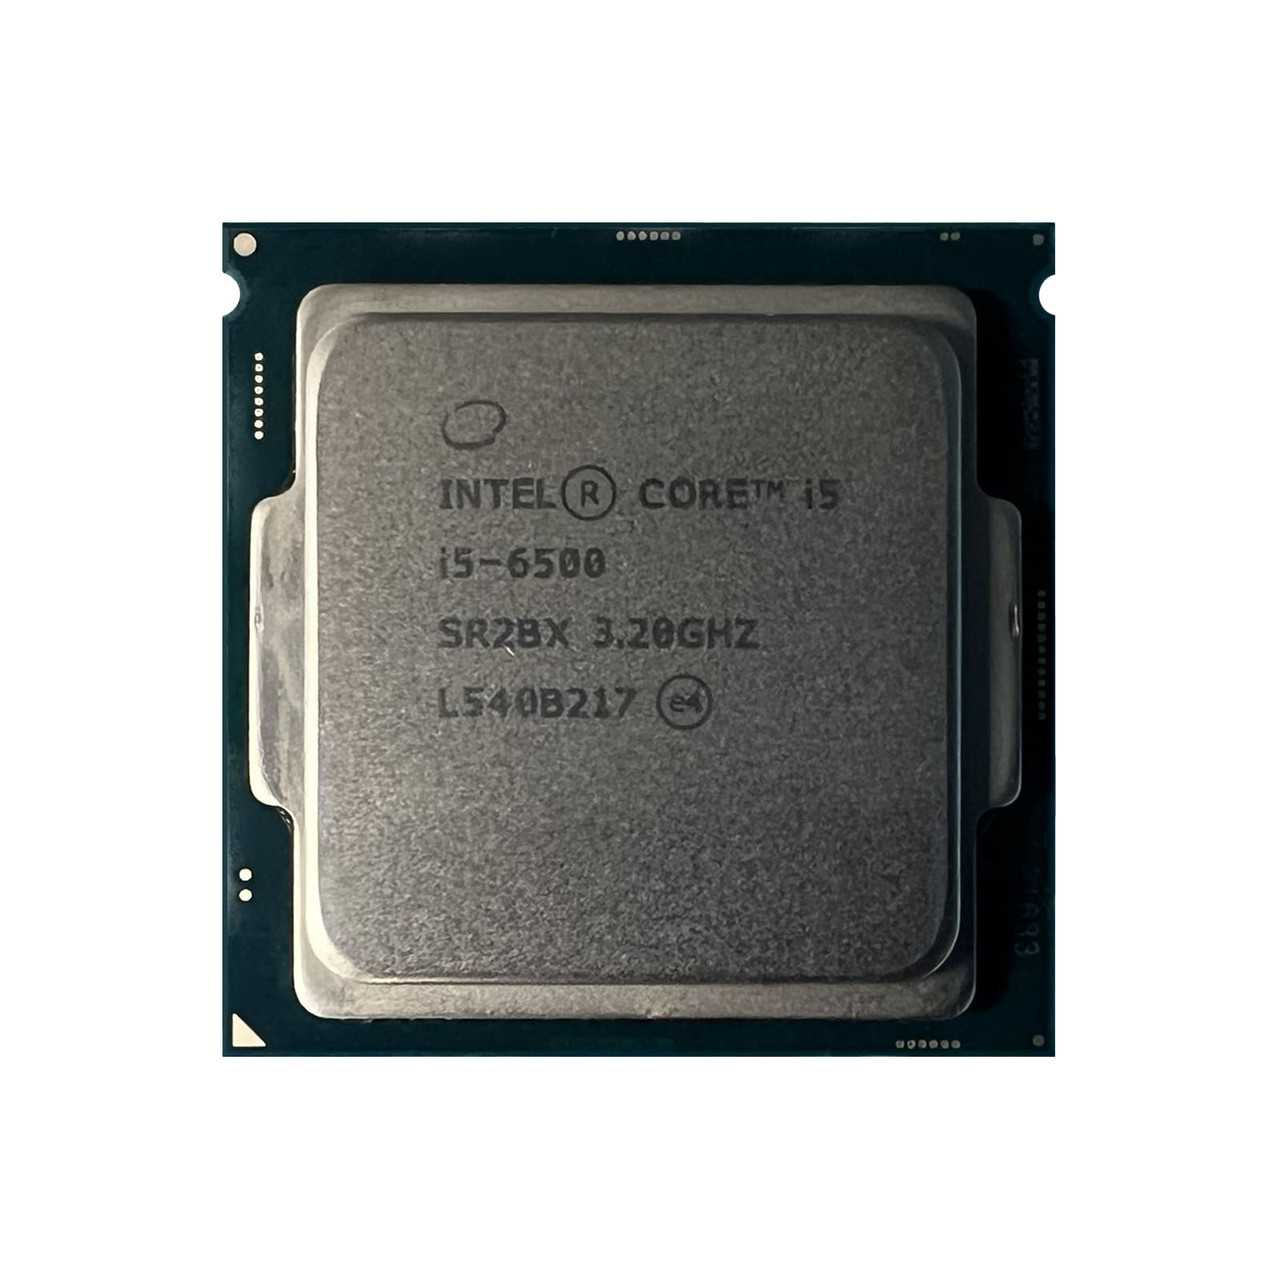 Intel SR2BX | Intel i5-6500 QC 3.20Ghz 6MB 8GTs Processor